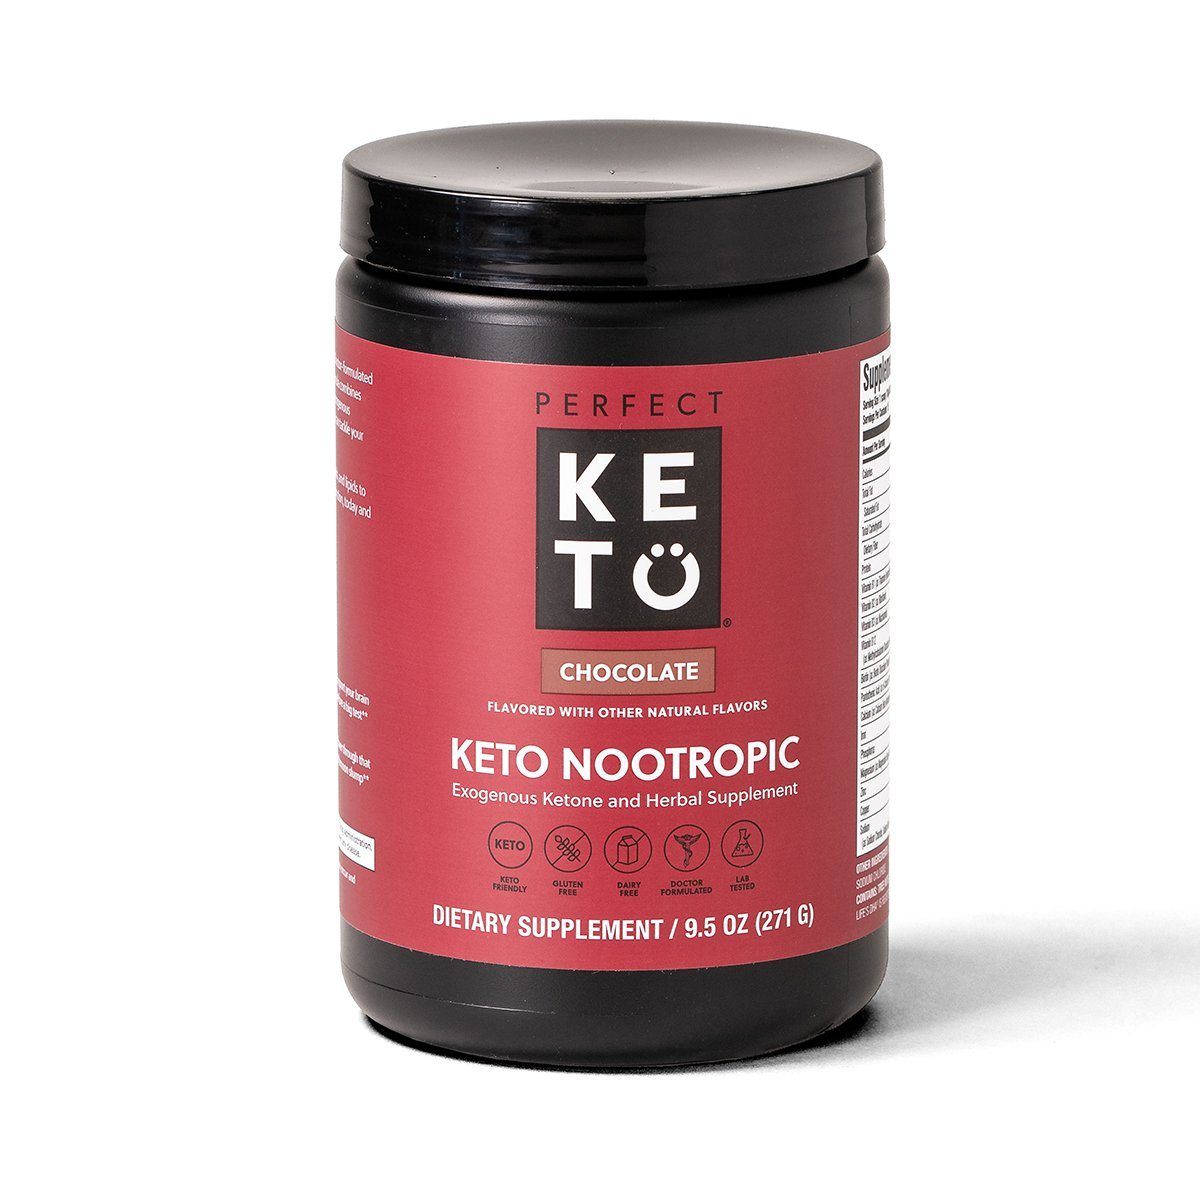 Keto diet nootropic supplements